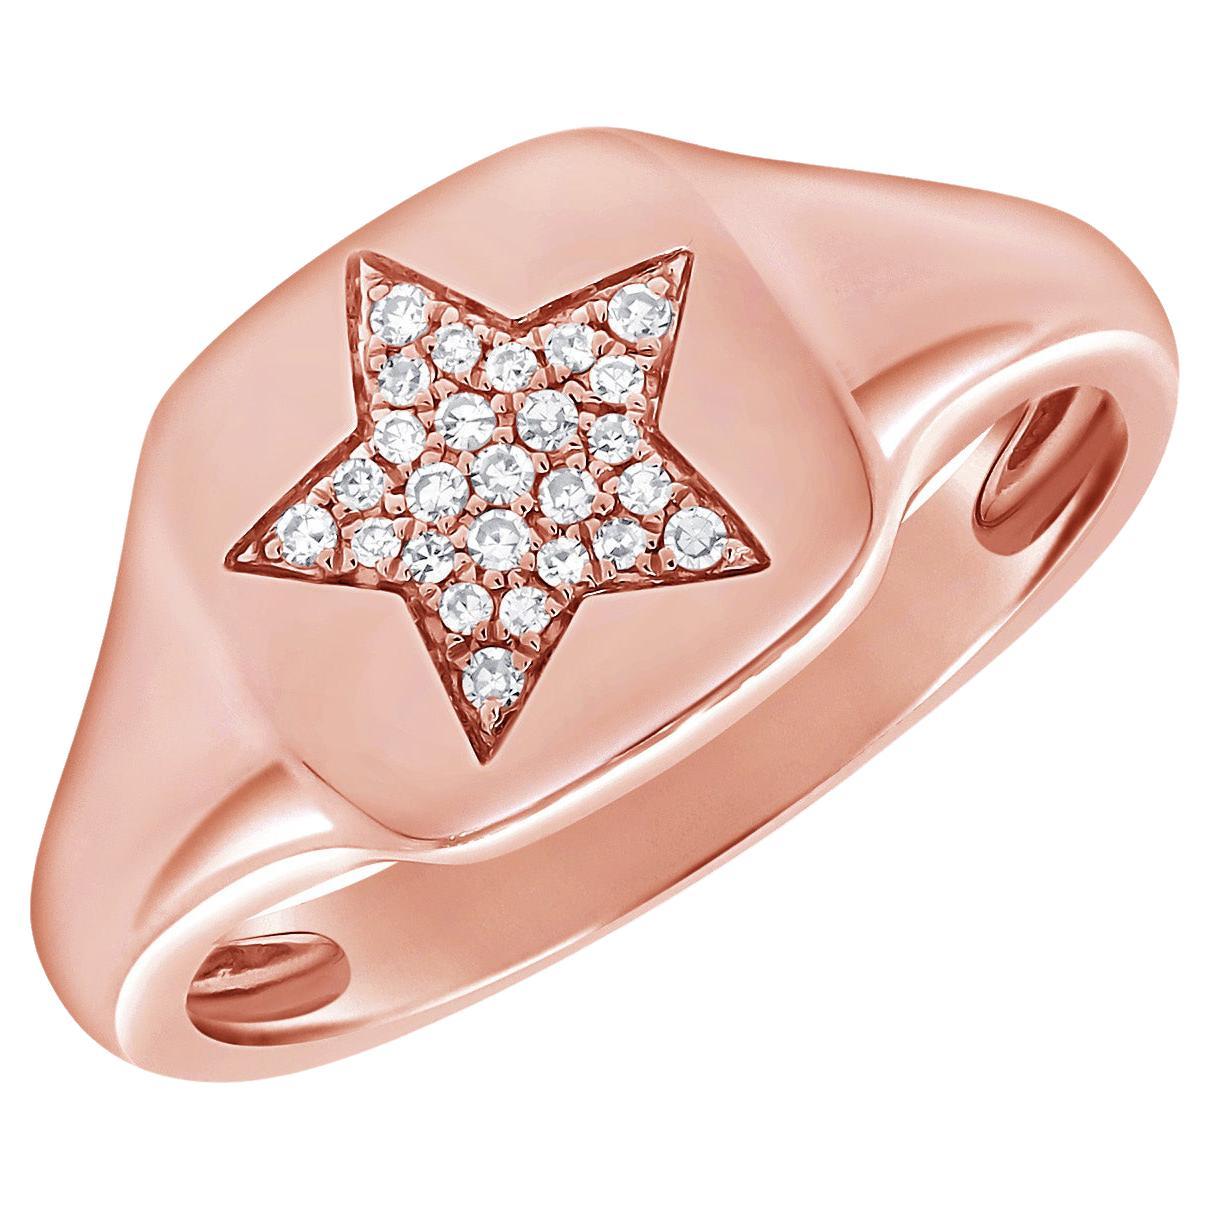 Bague sigillaire rose 14 carats avec étoile pavée de diamants 0,06 carat